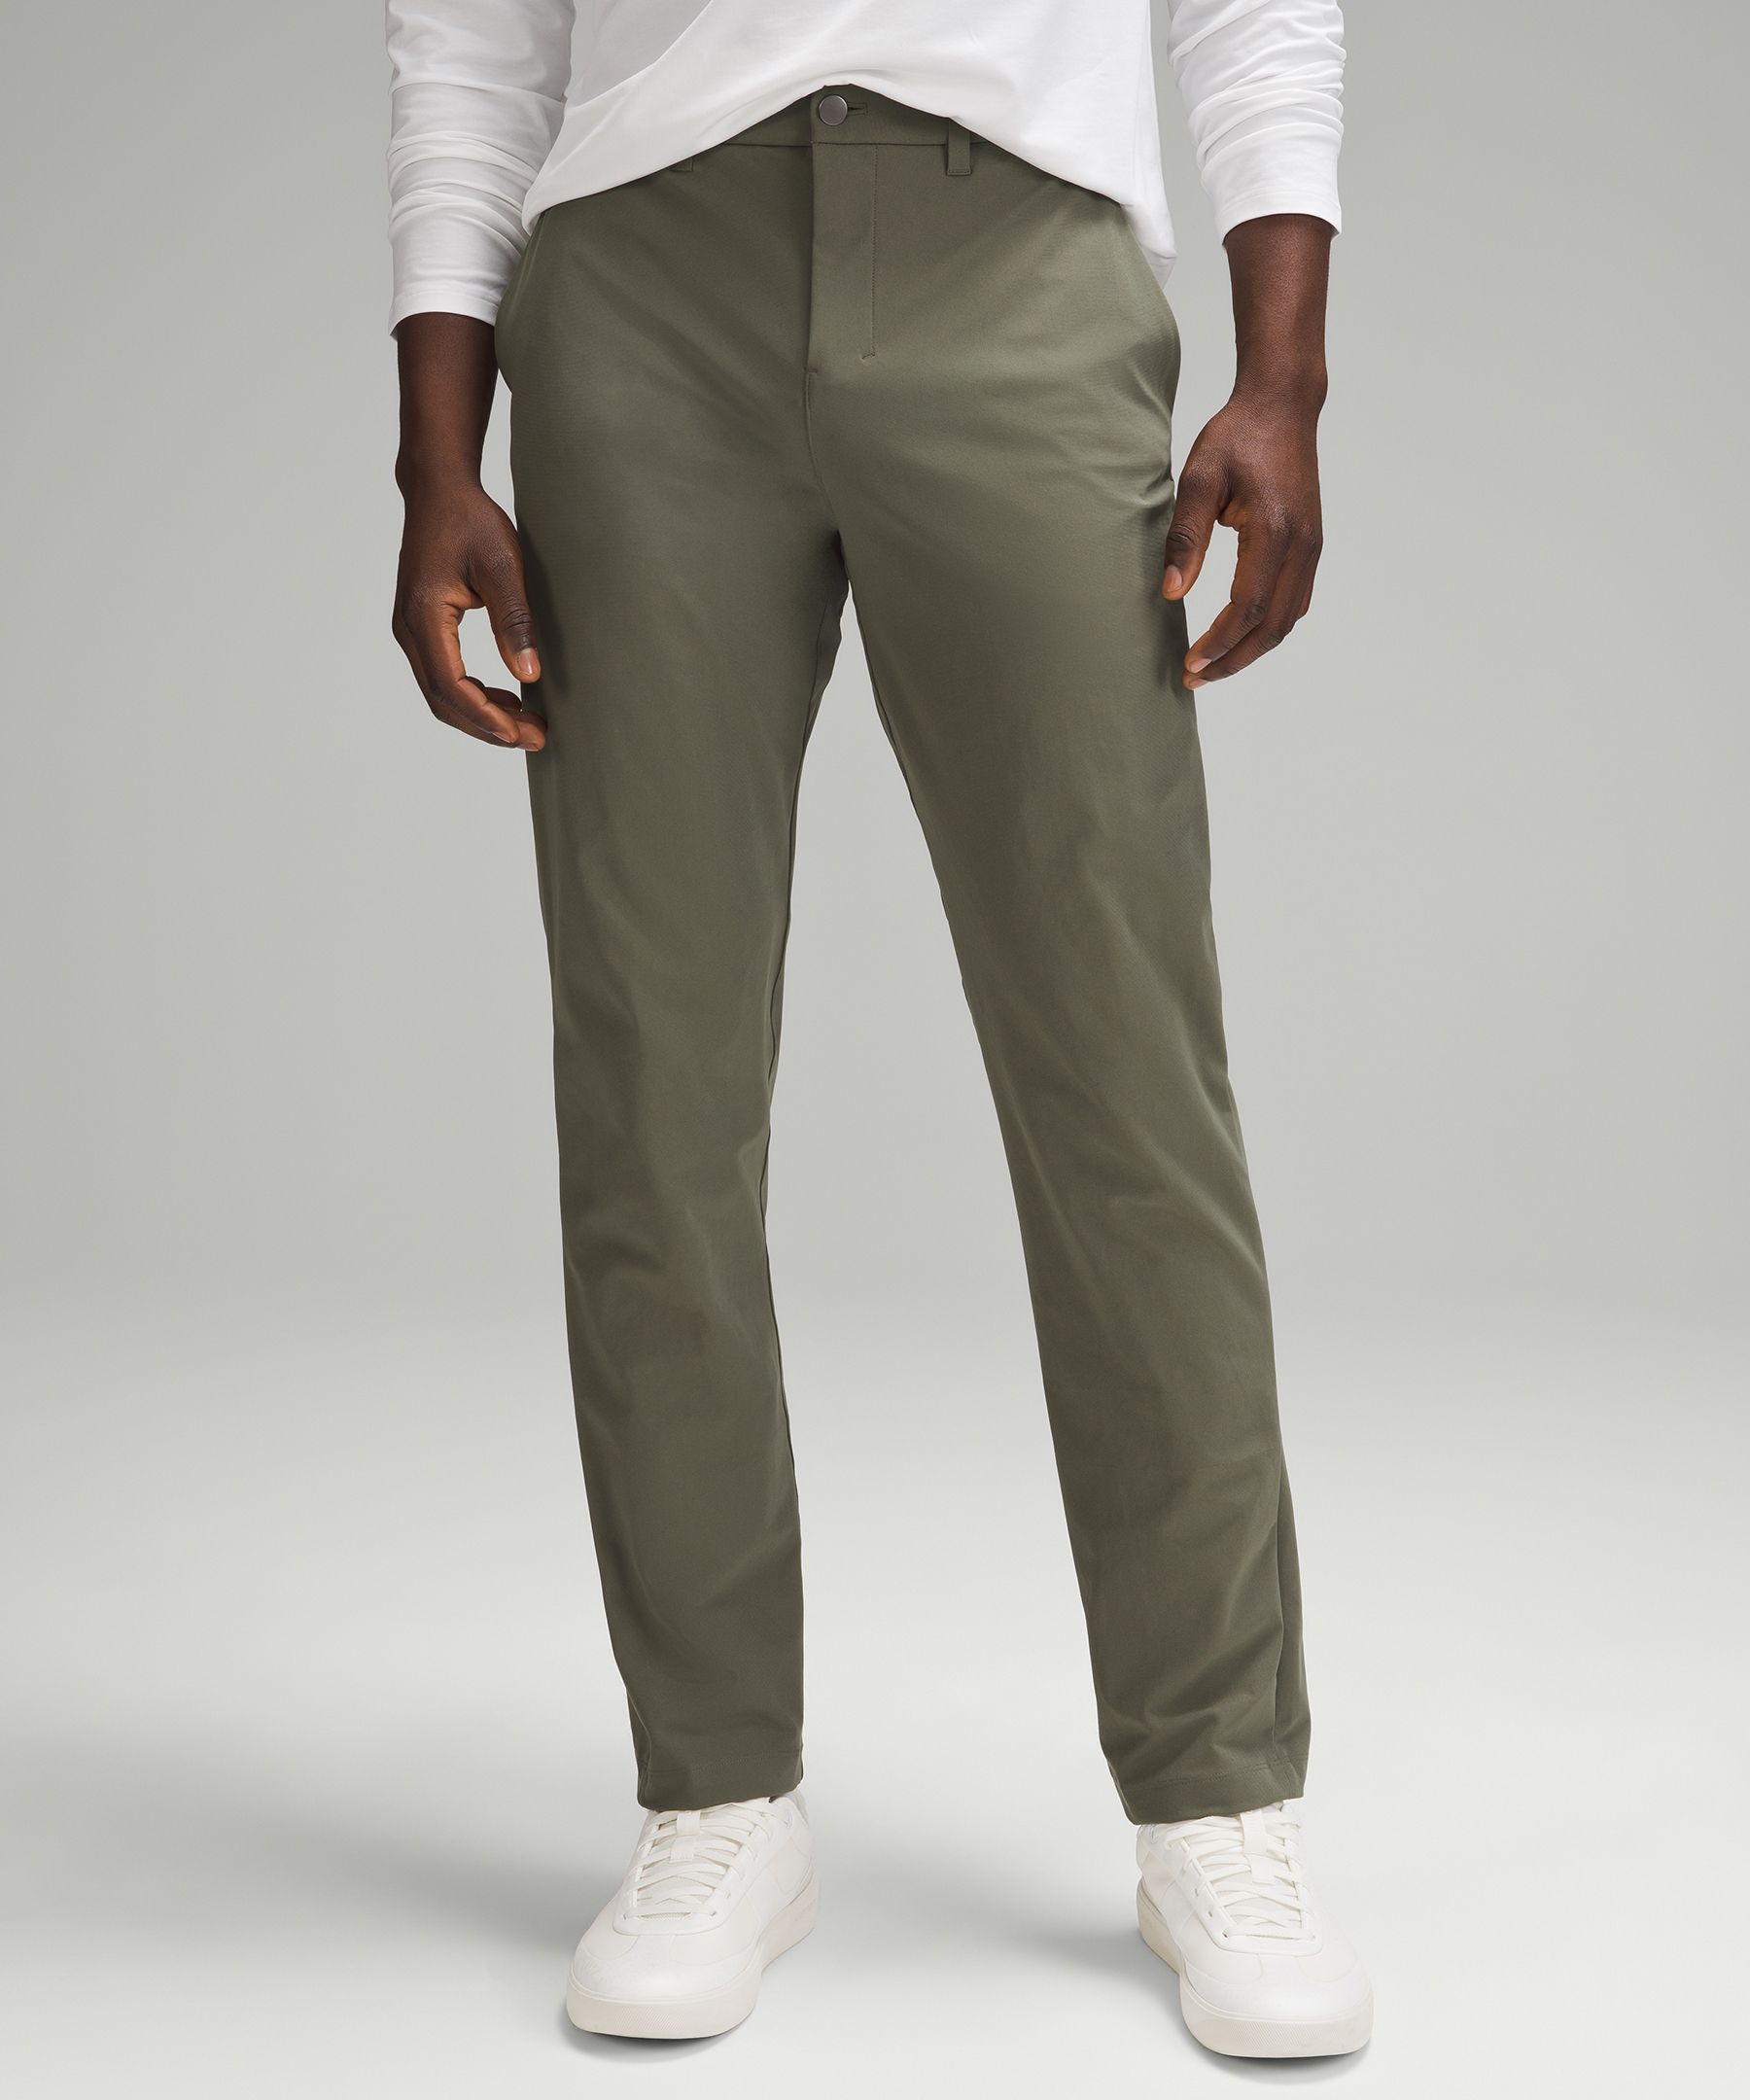 Lululemon Abc Classic-fit Trousers 34"l Warpstreme